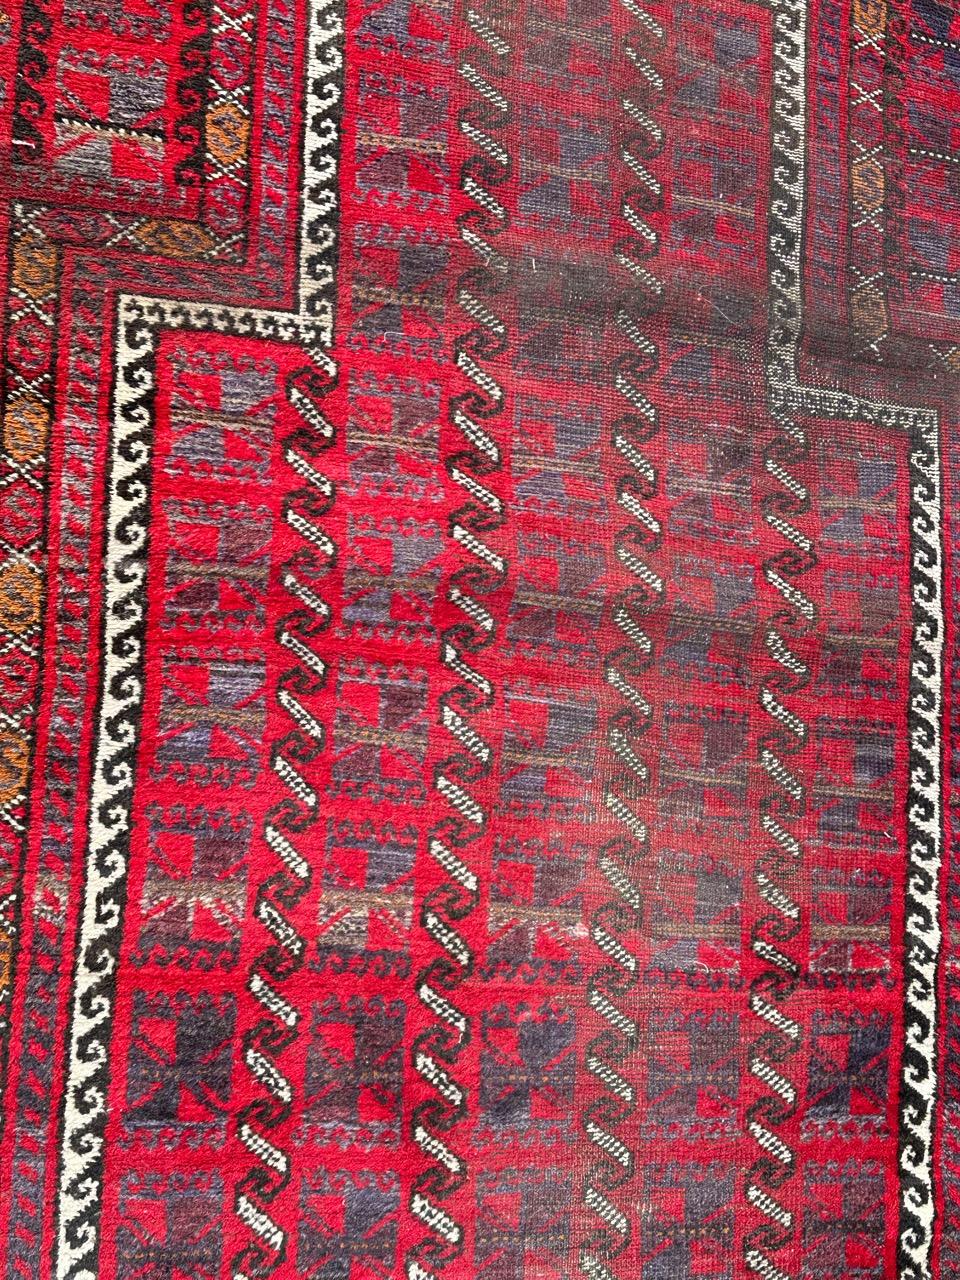 Hübscher türkischer Teppich im Vintage-Look mit Mihrab-Motiv in den Farben Rot, Schwarz, Grau und Weiß, mit deutlichen altersbedingten Gebrauchsspuren. Vollständig handgeknüpft mit Wolle auf Wollbasis

✨✨✨
